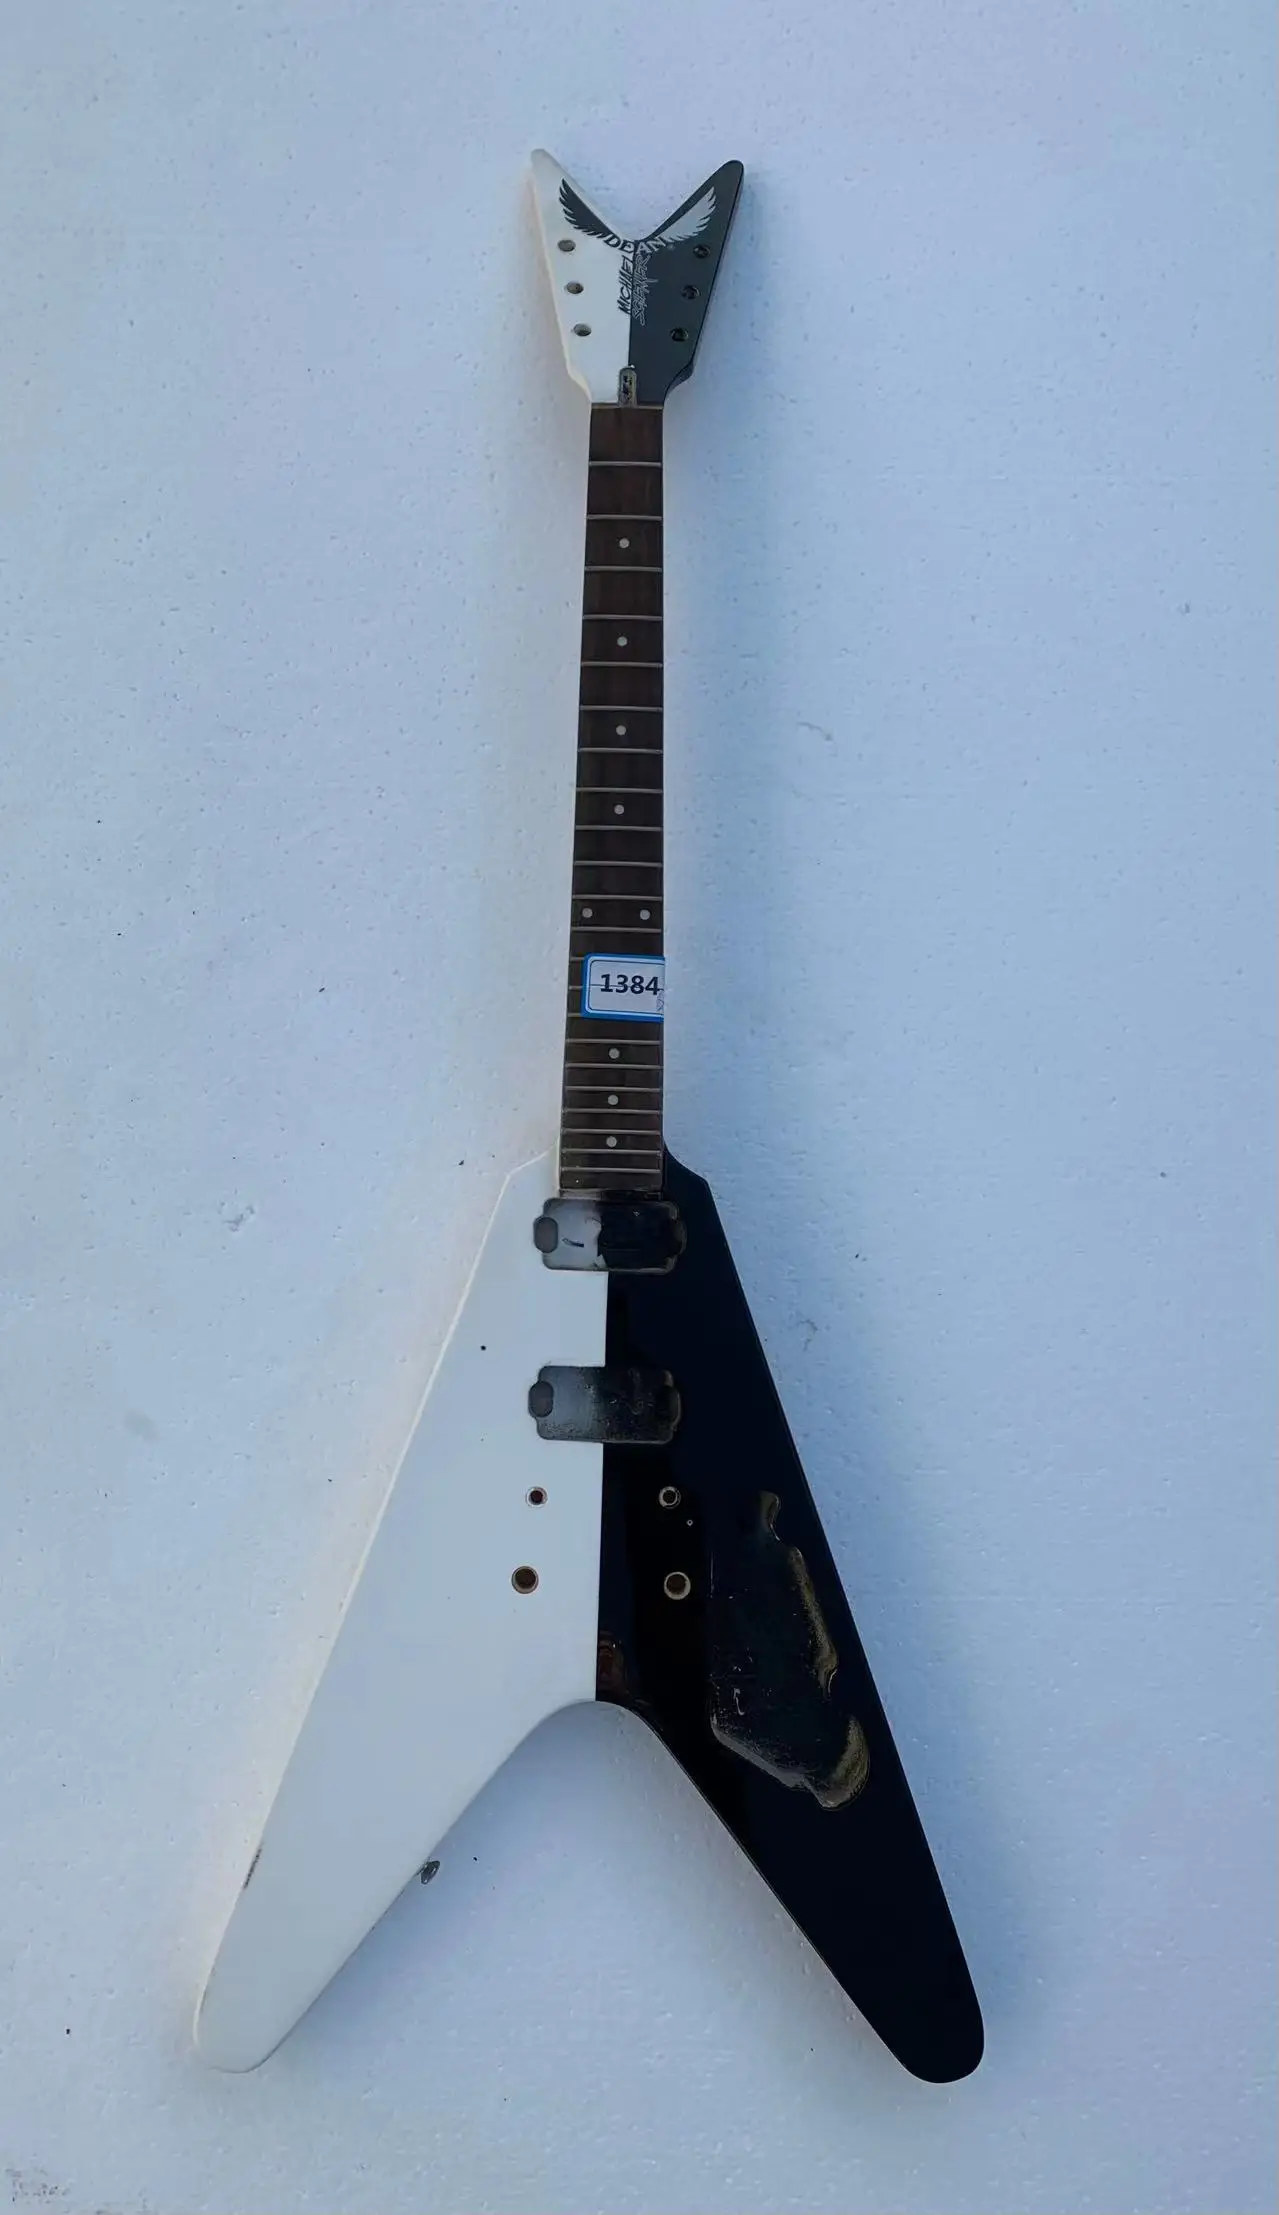 

DIY D V-образная электрическая гитара (не новая) гитара черно-белая без металлических элементов реальная скидка Бесплатная доставка 1384